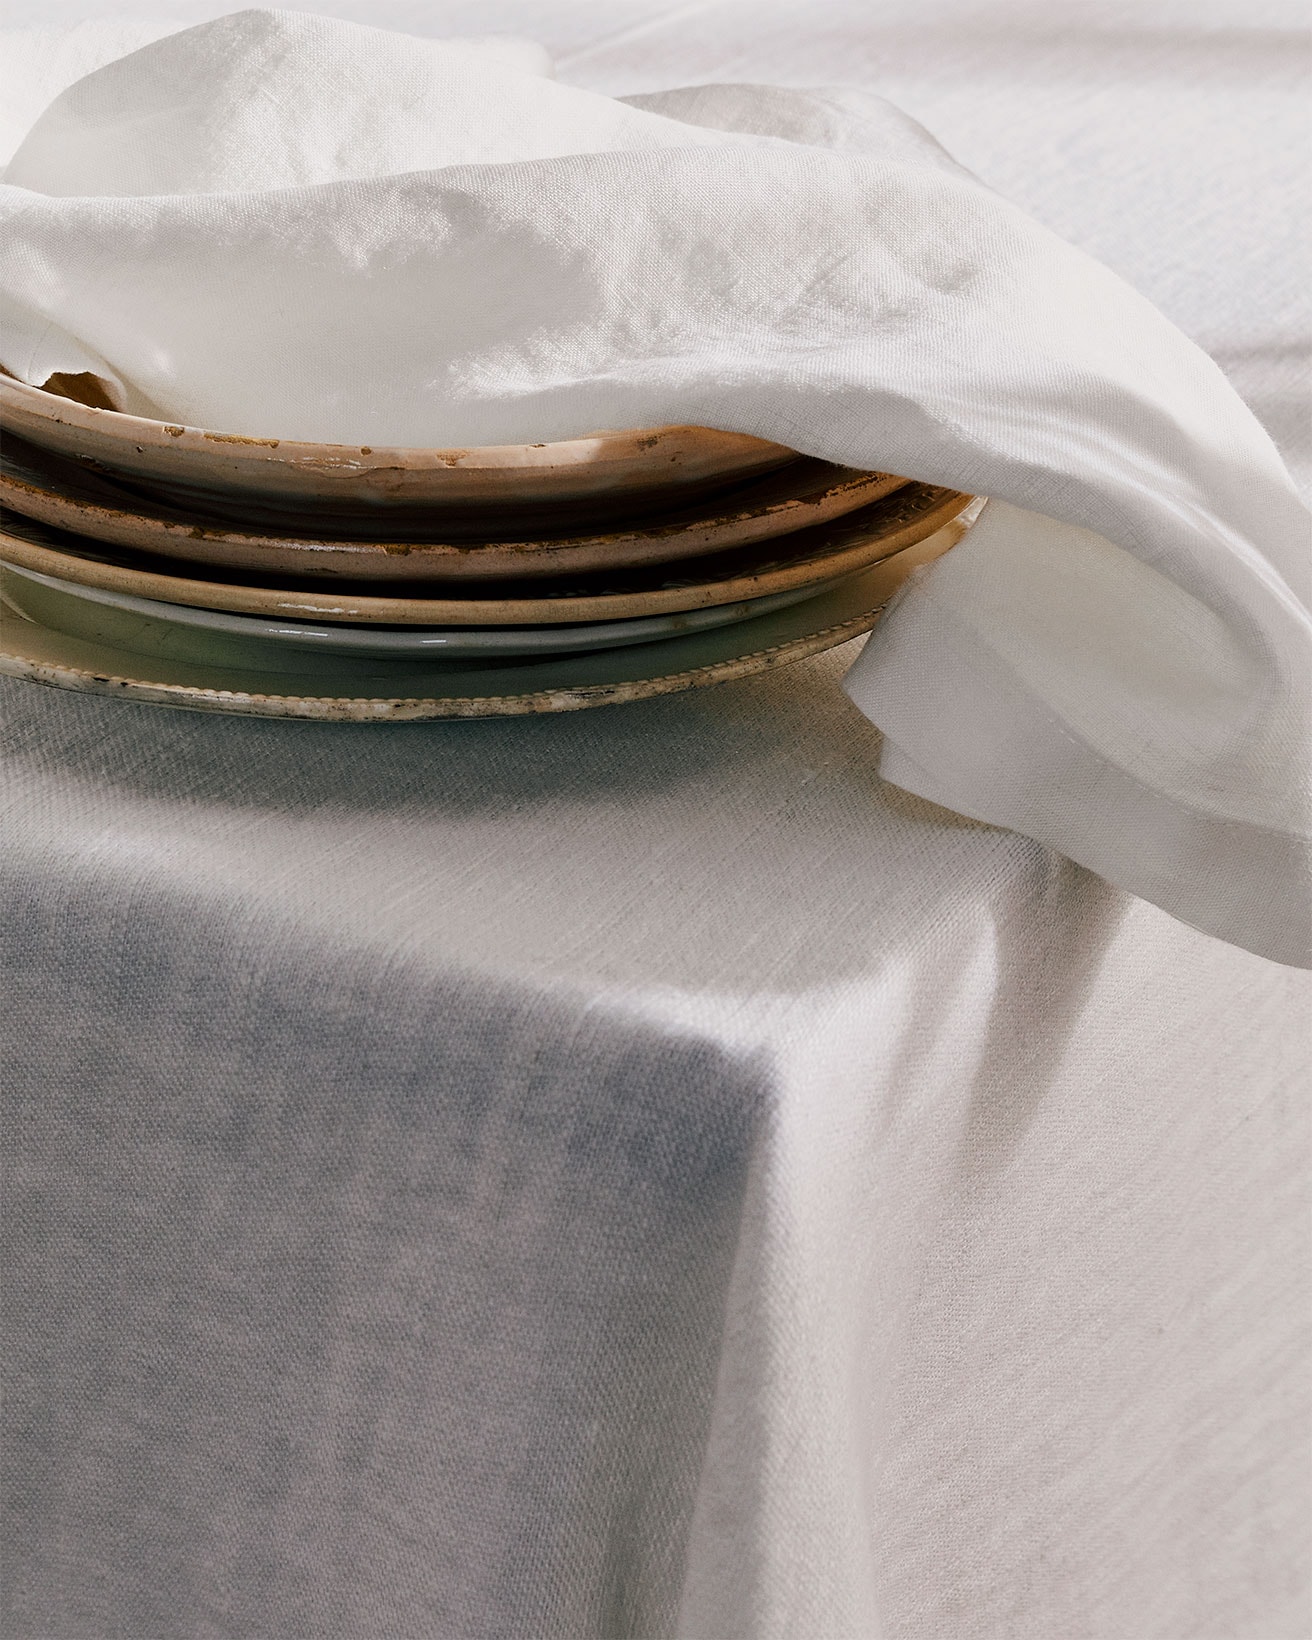 Tekla Fabrics Kitchenware Textiles Collection Tablecloth White Plates